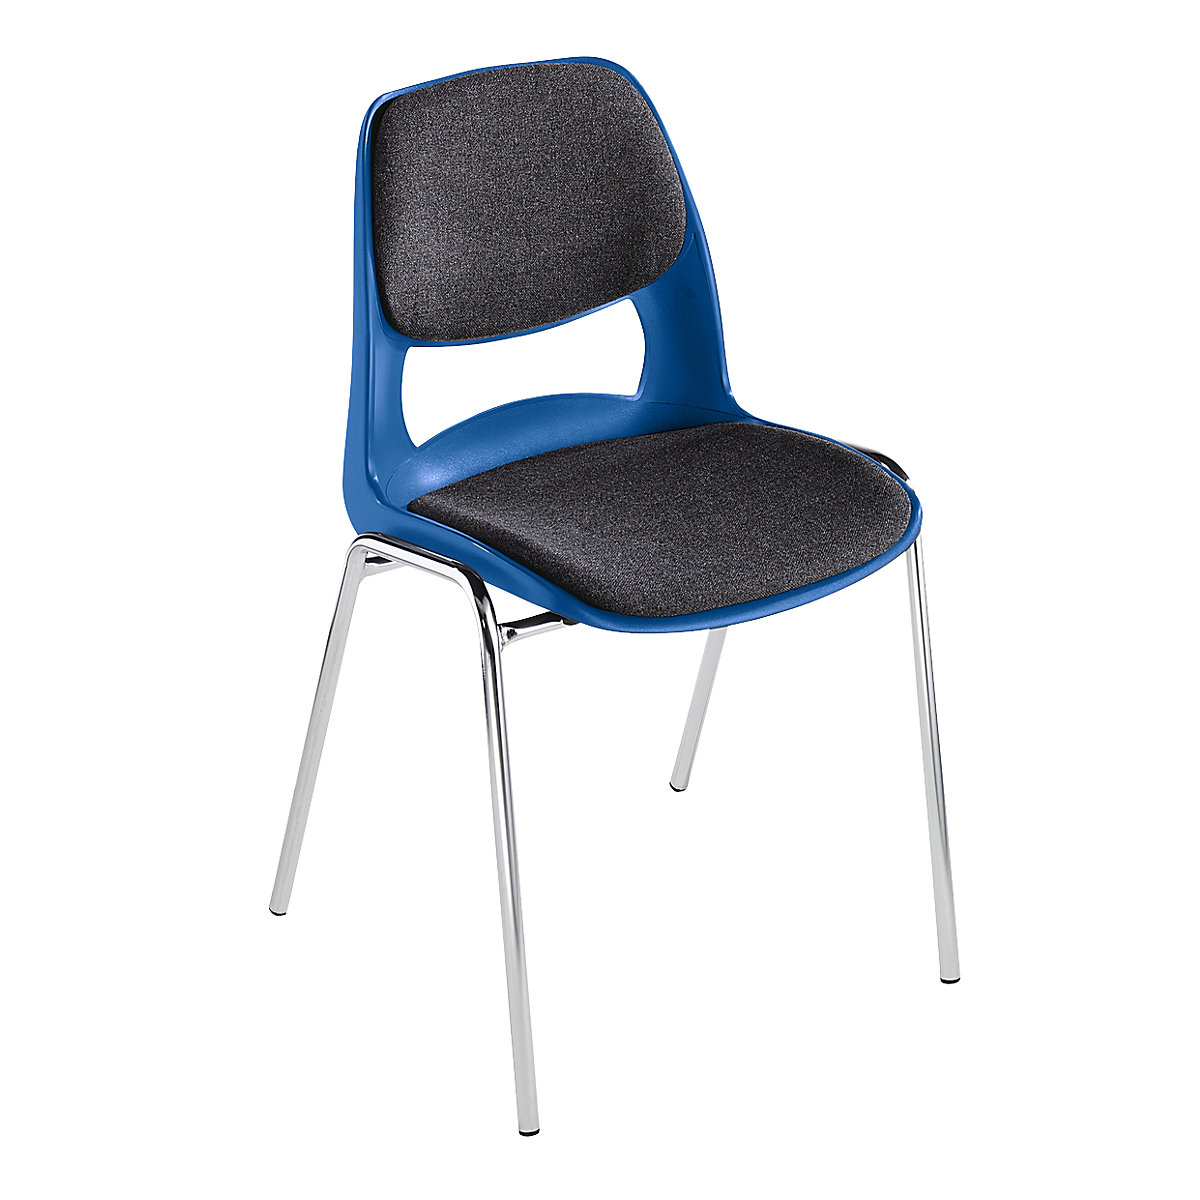 Školjkasta stolica od polipropilena